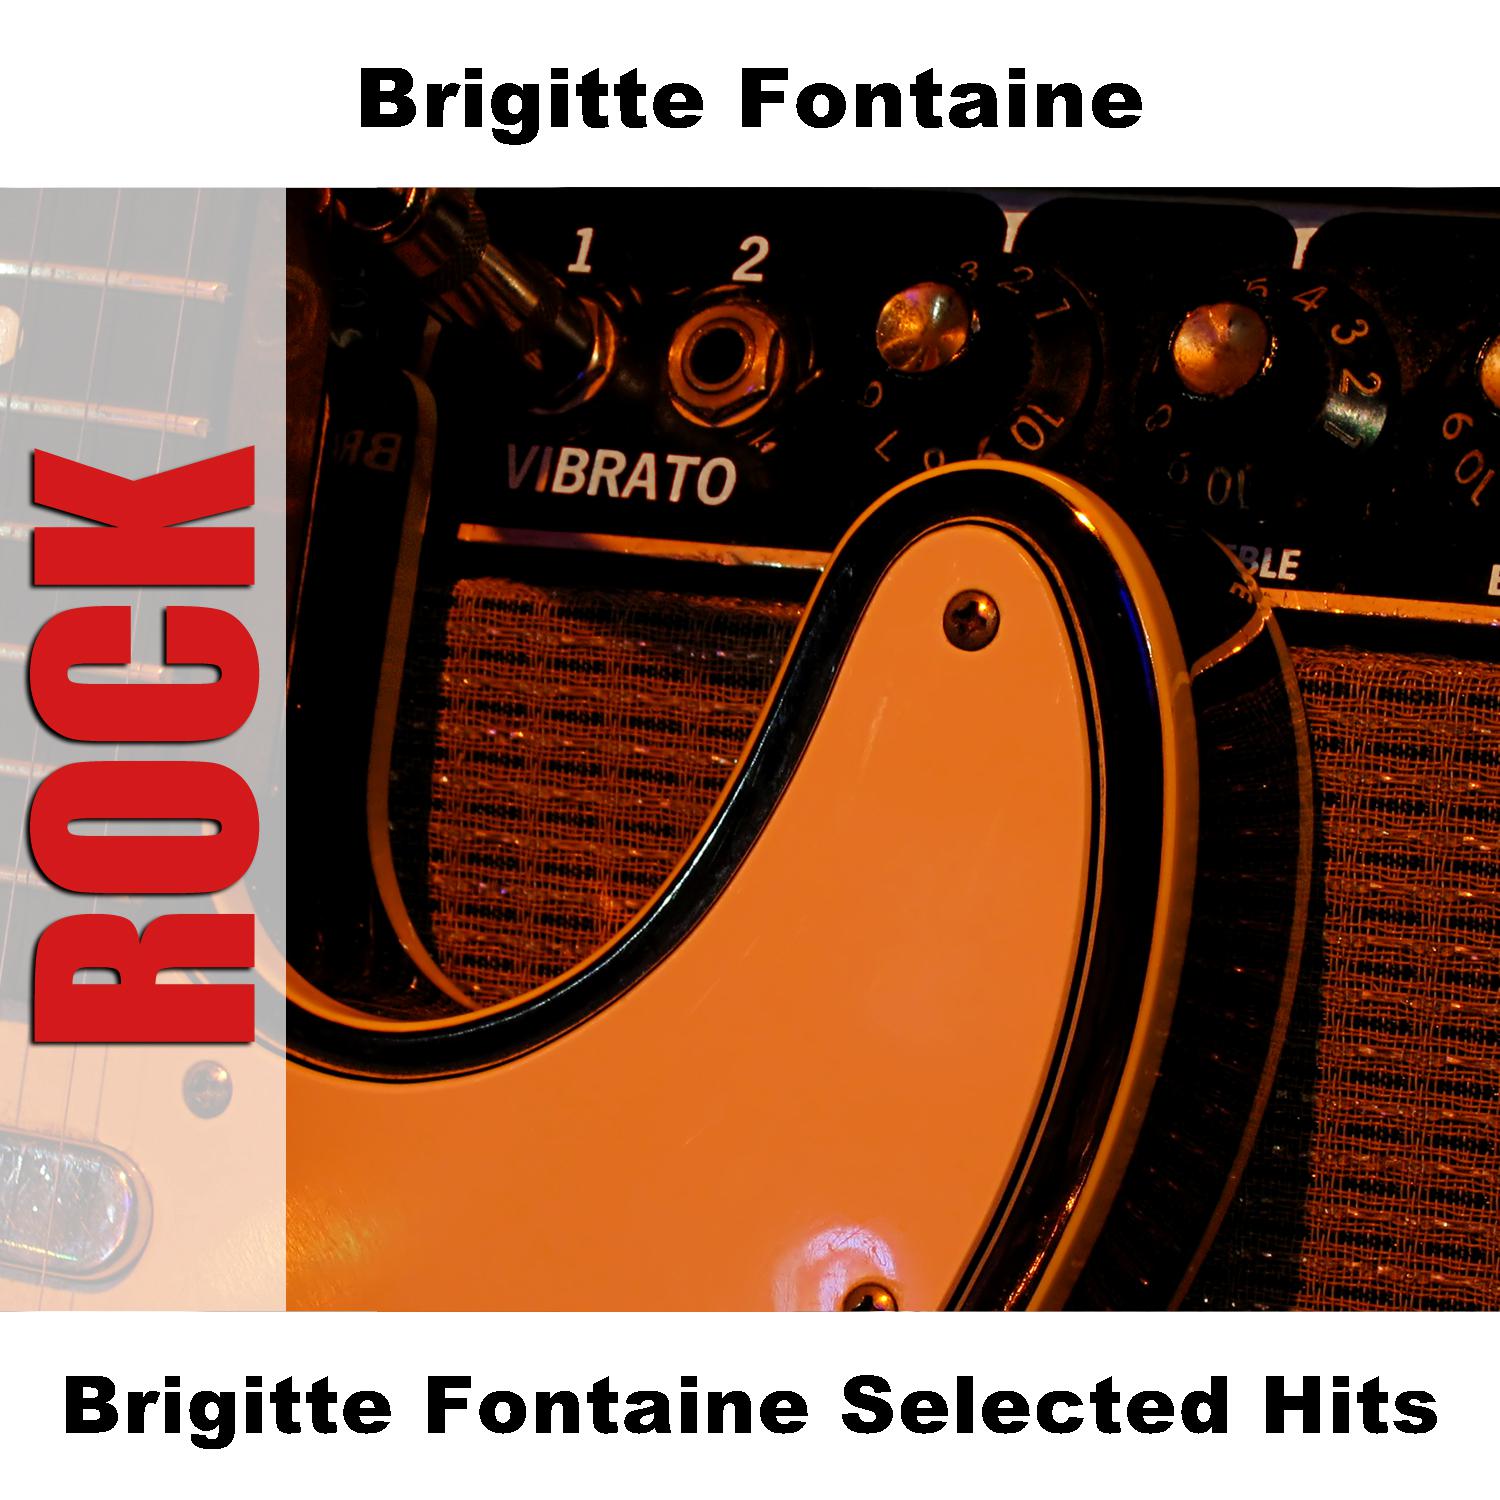 Brigitte Fontaine - Le Chant Des Chants - Original